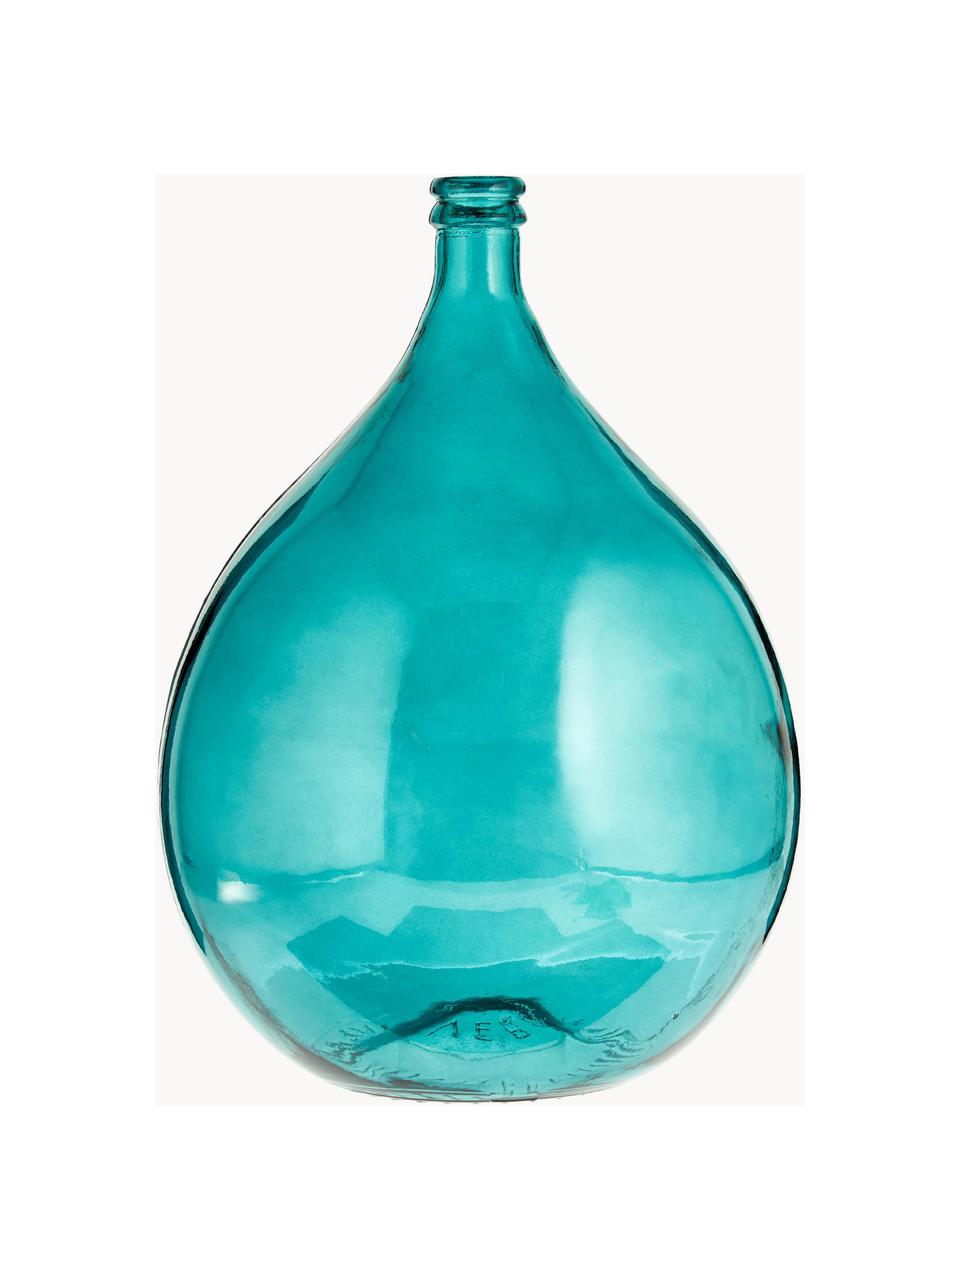 Wazon podłogowy ze szkła z recyklingu Drop, Szkło z recyklingu, Niebieski, Ø 40 x W 56 cm